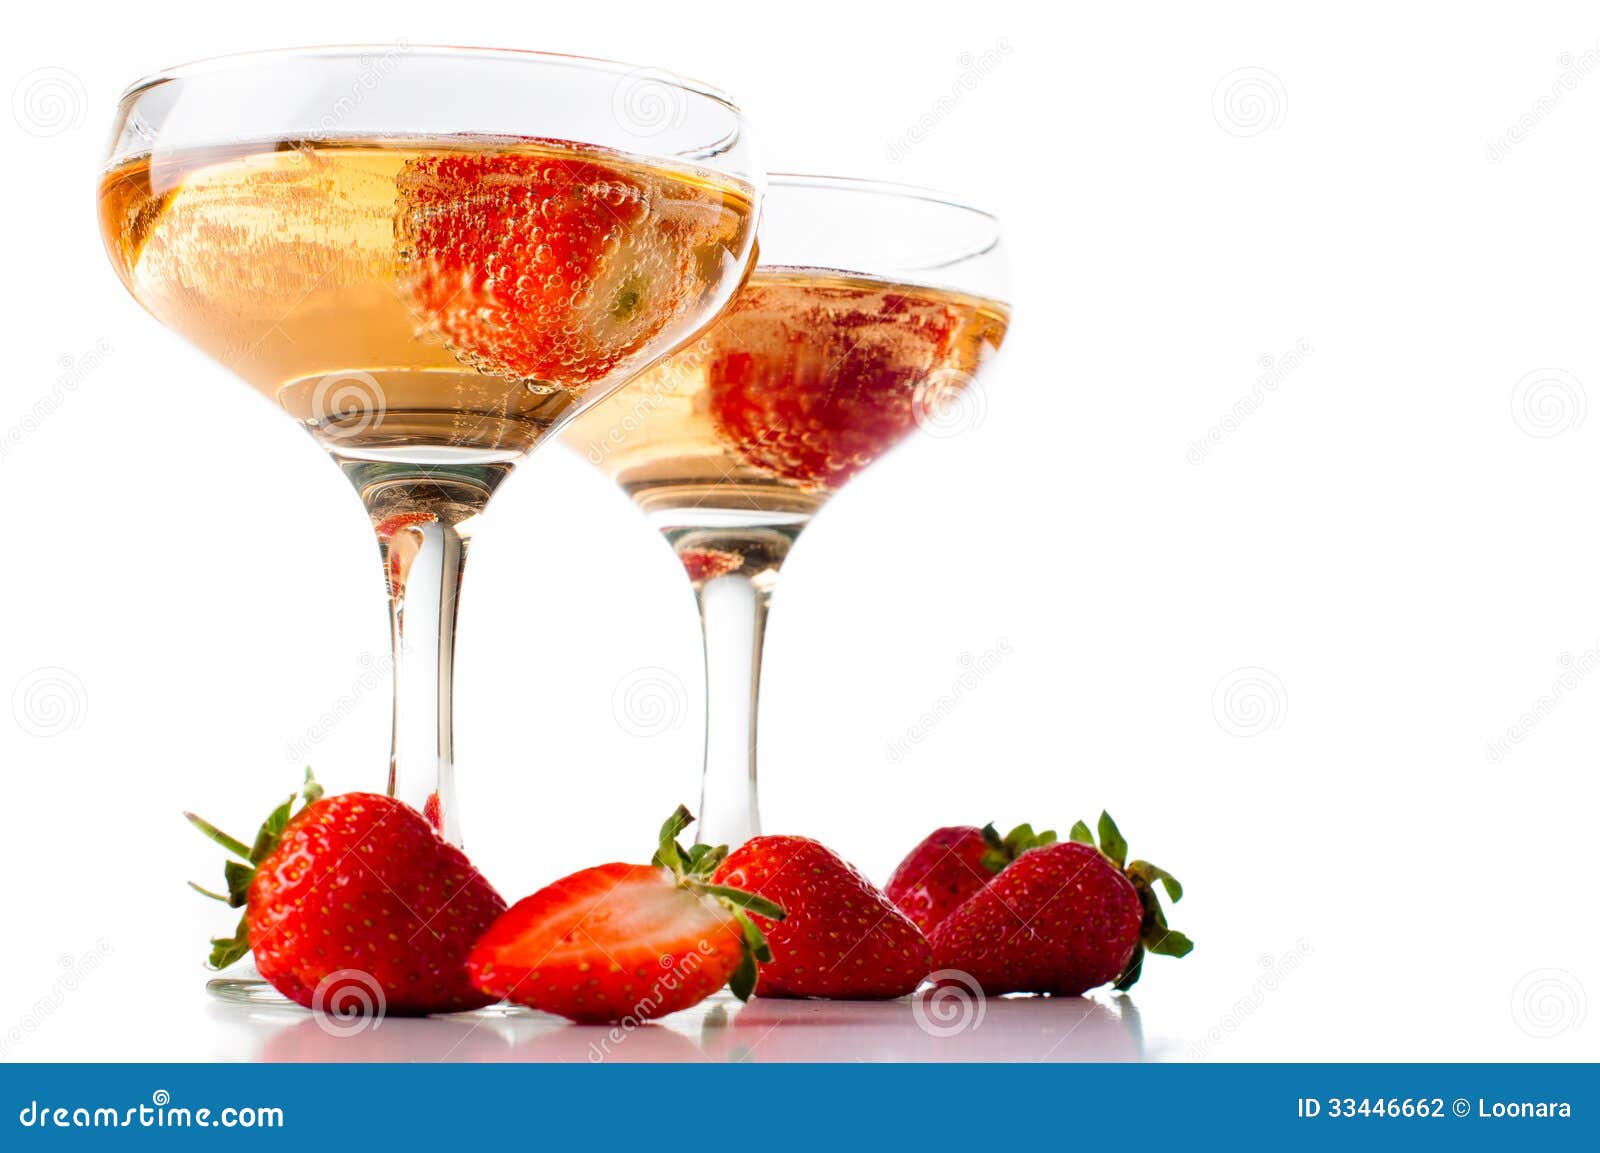 Hampagne con le fragole su un fondo bianco. Due vetri di champagne freddo con le fragole su un fondo bianco, isolati, primo piano